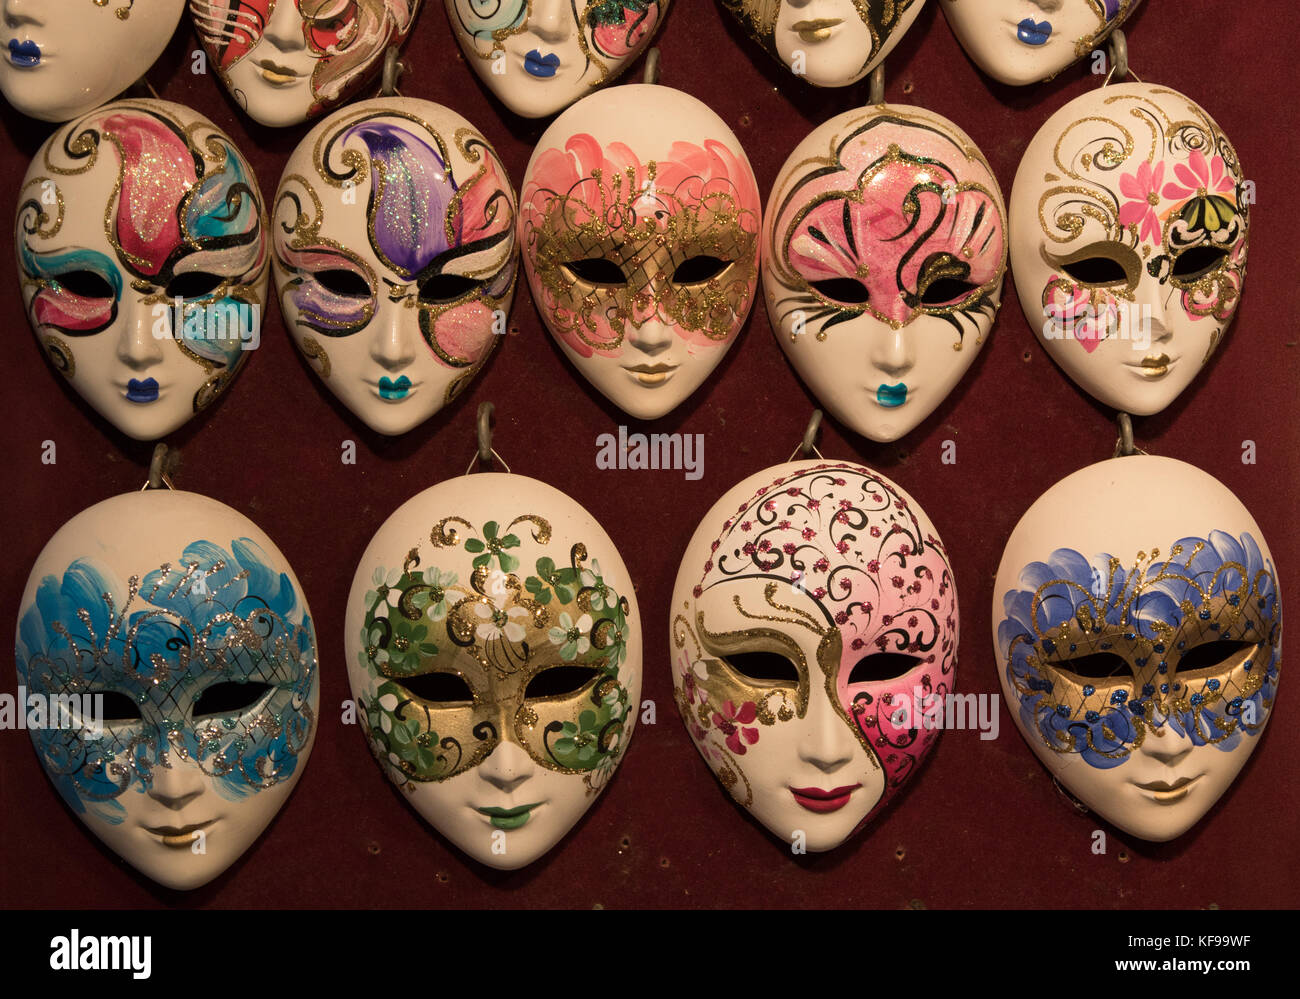 Maschere Di Ceramica Immagini e Fotos Stock - Alamy